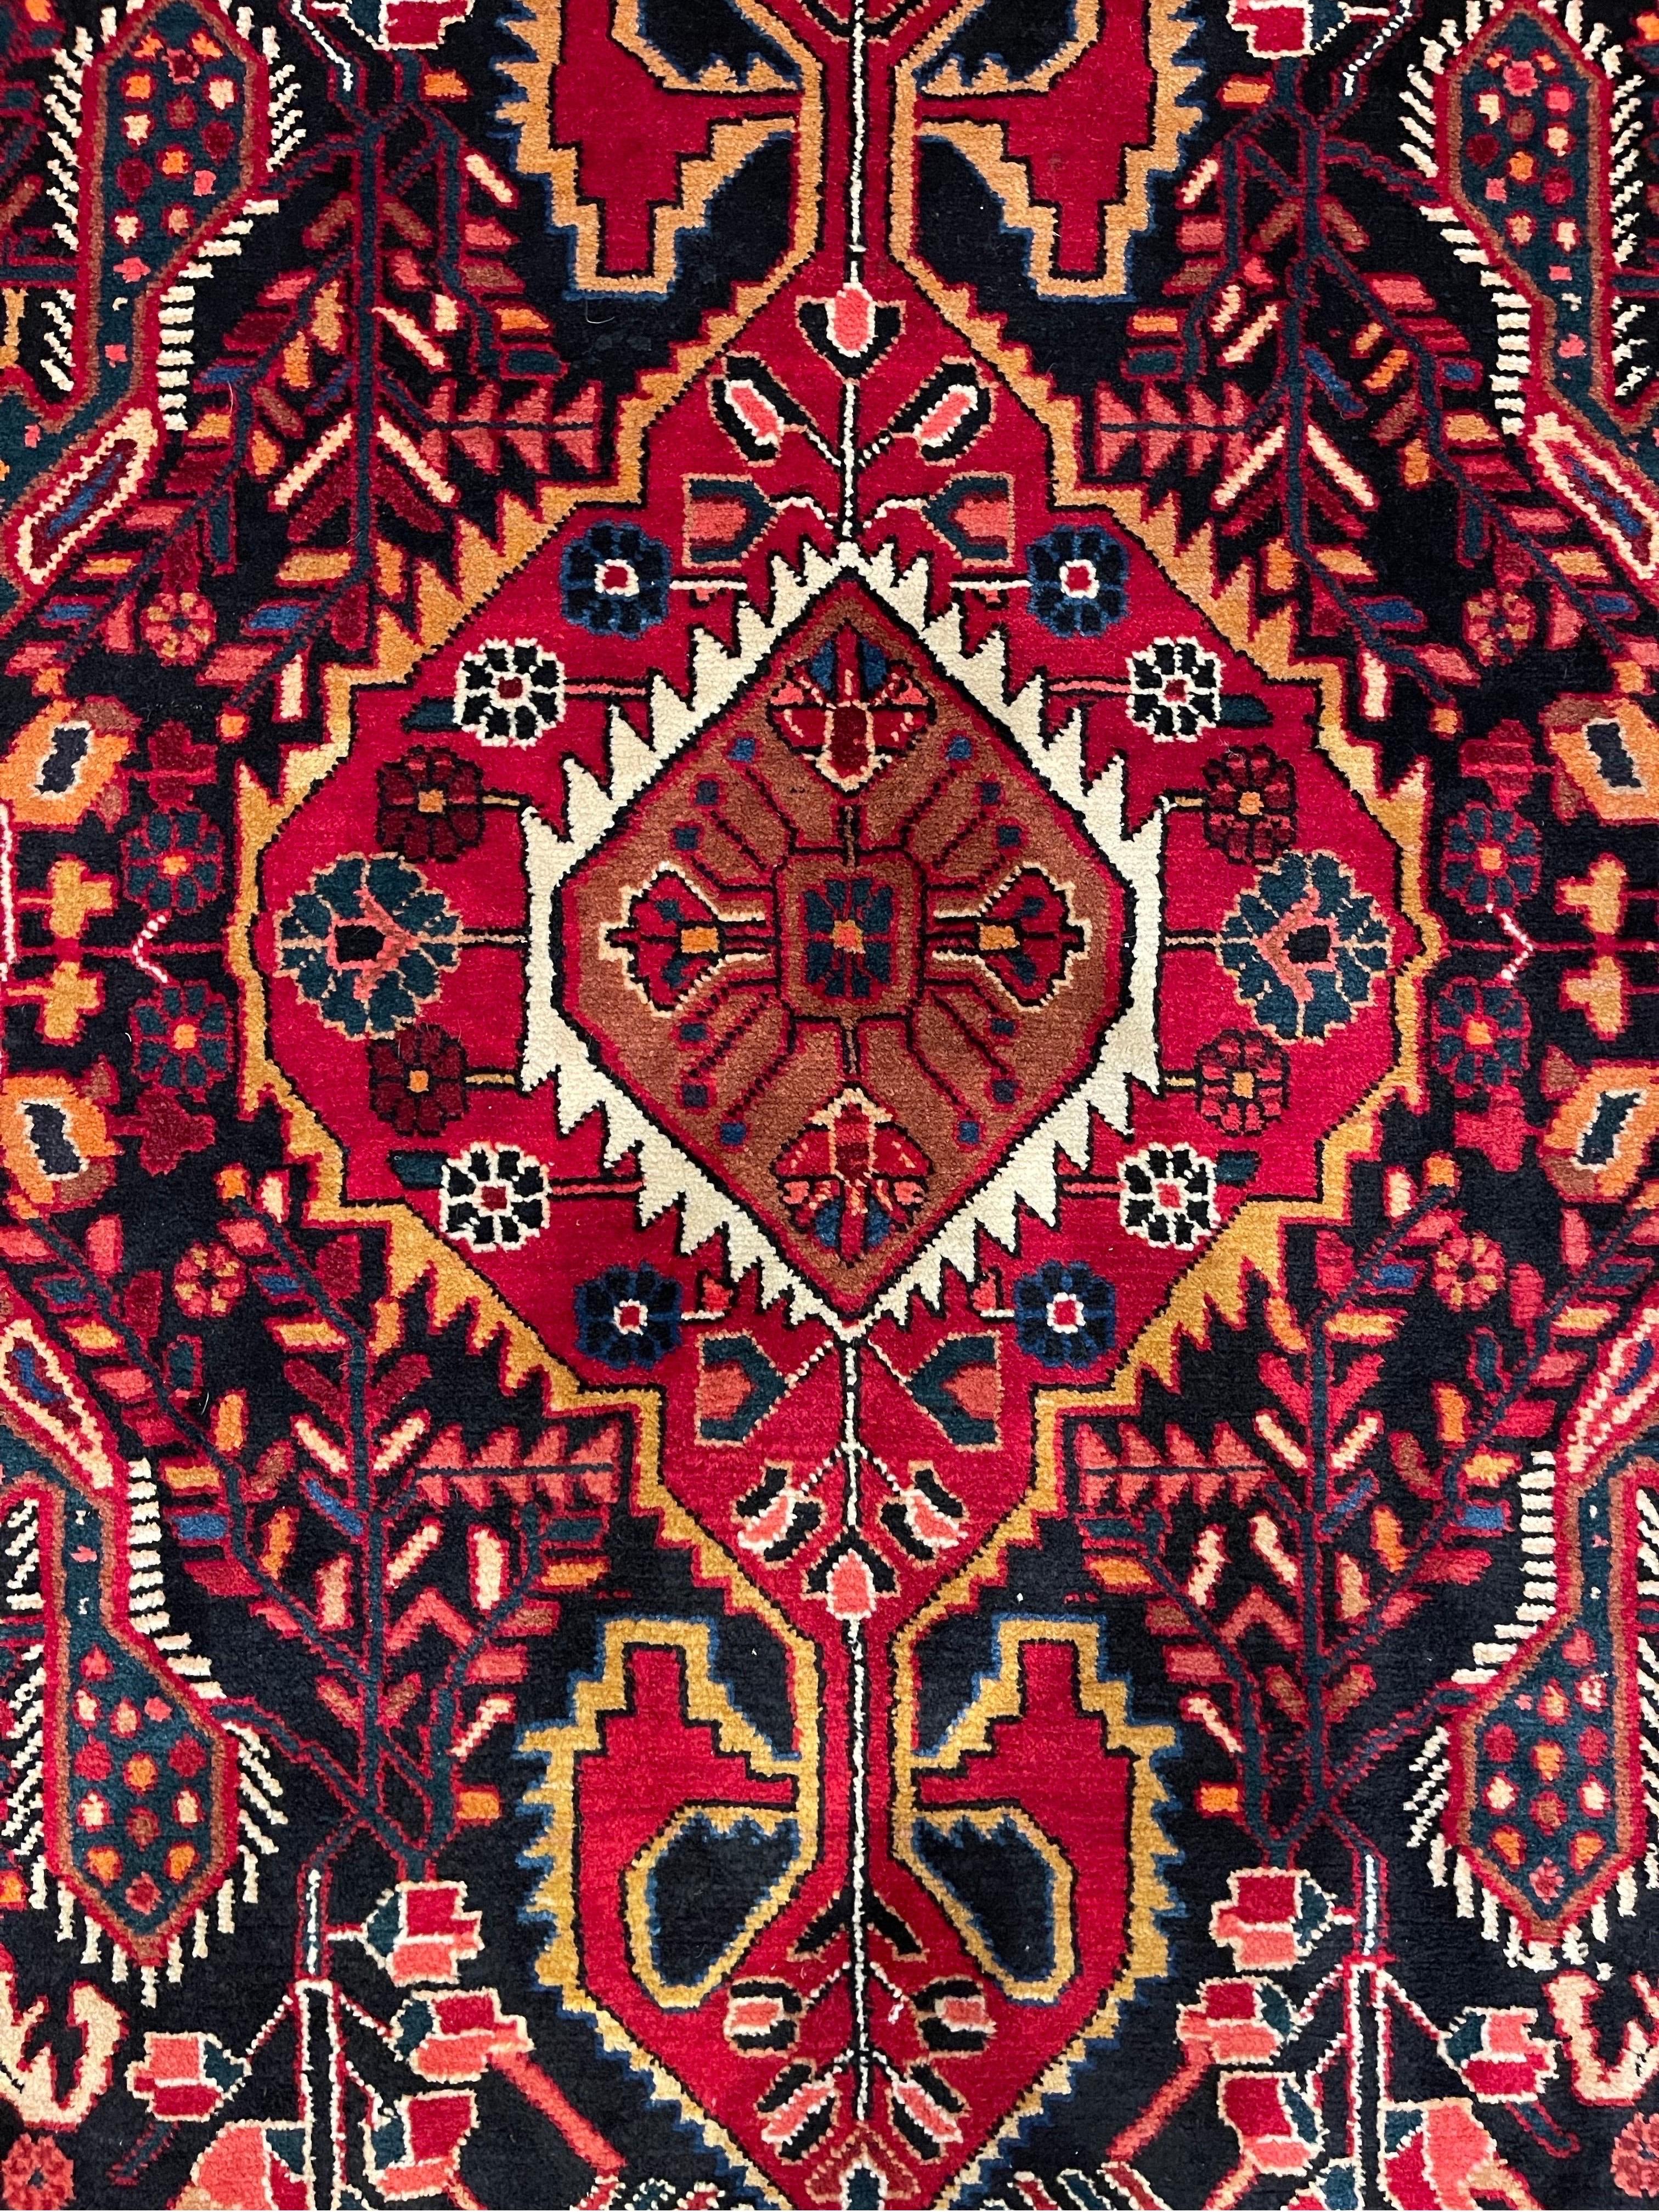 Bachtiari-Teppiche sind dafür bekannt, dass sie die hellsten und farbenprächtigsten aller Nomadenteppiche sind. Bakhtiari-Teppiche werden vom Bakhtiari-Stamm, einem der ältesten und bekanntesten persischen Teppichhersteller, handgewebt.  Dieses